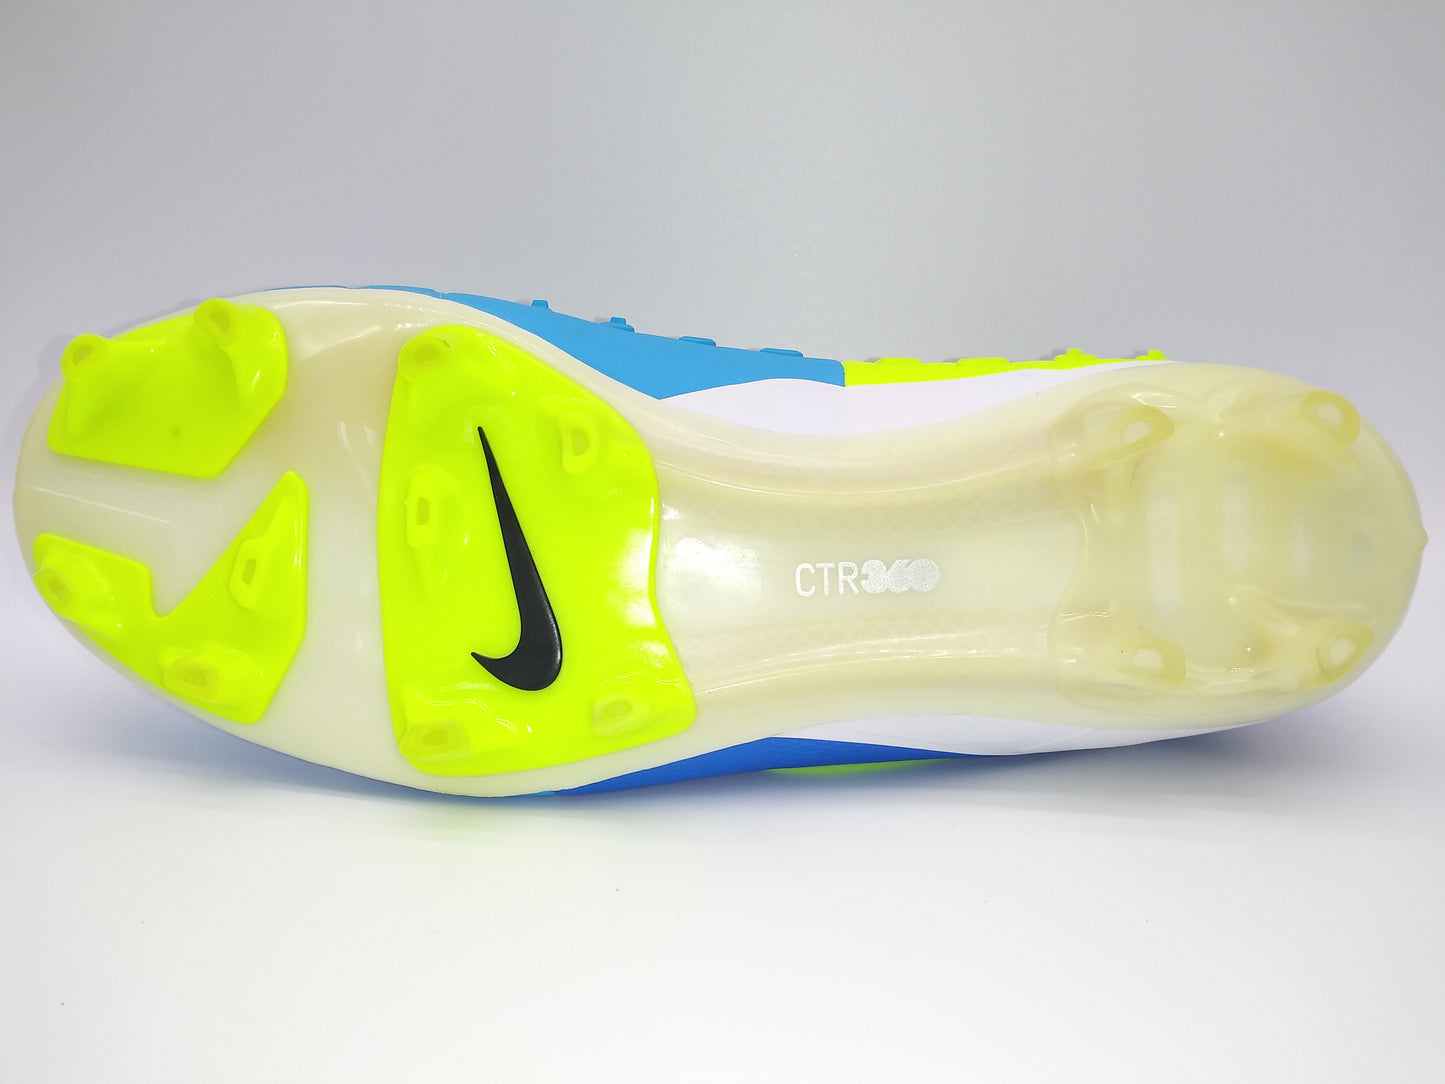 Nike CTR360 Maestri lll FG Blue Yellow